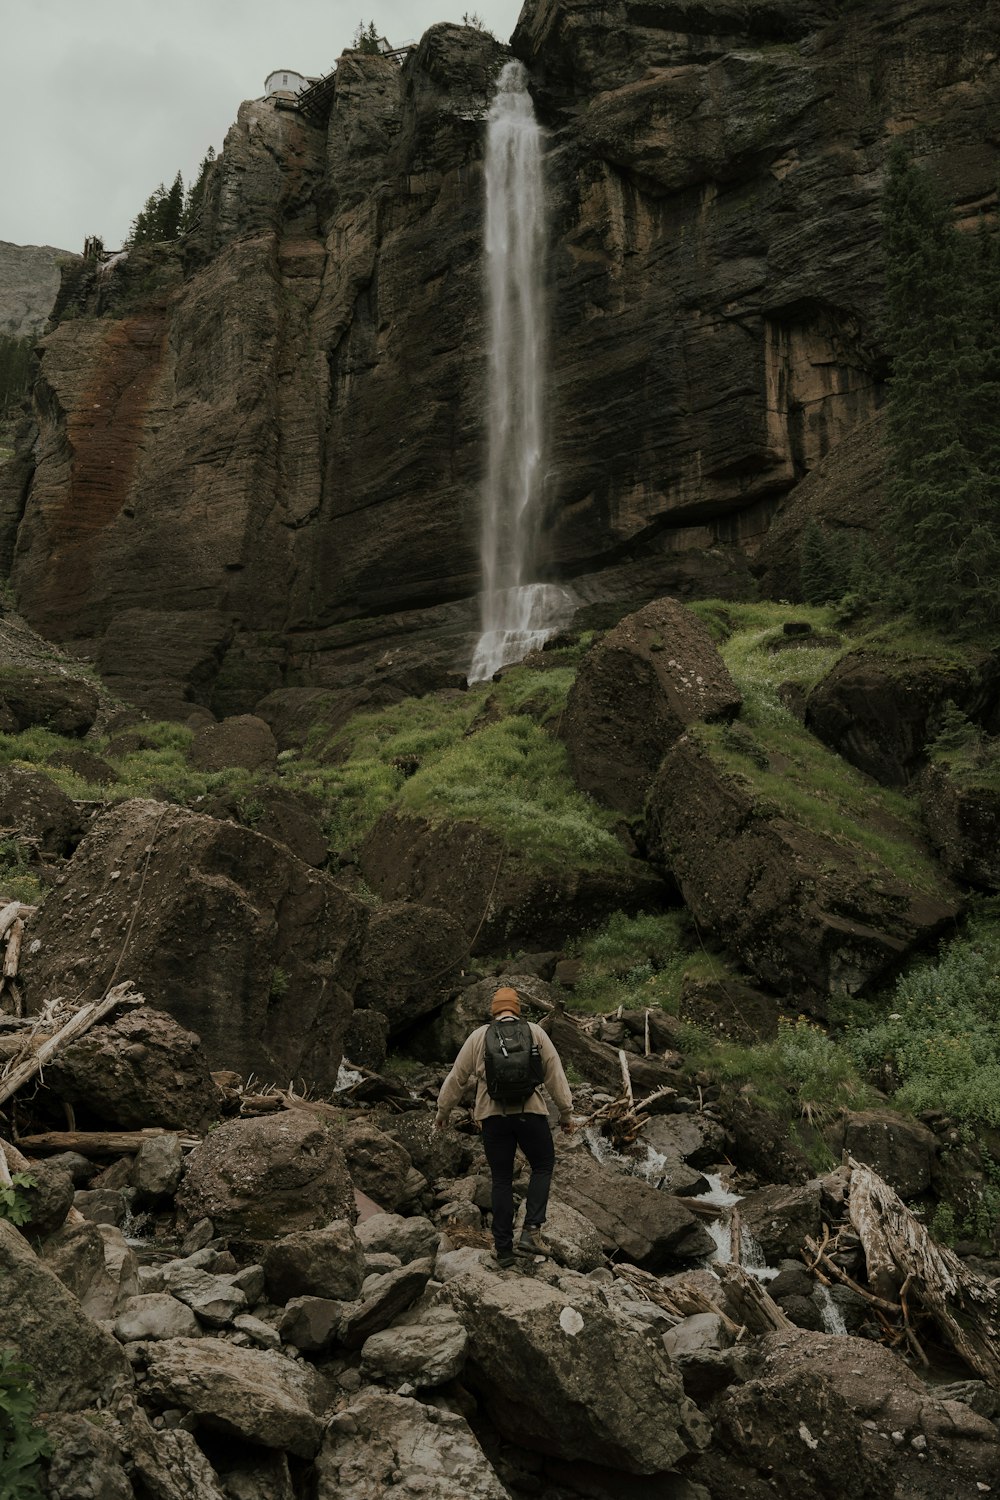 Una persona in piedi su una collina rocciosa con una cascata sullo sfondo